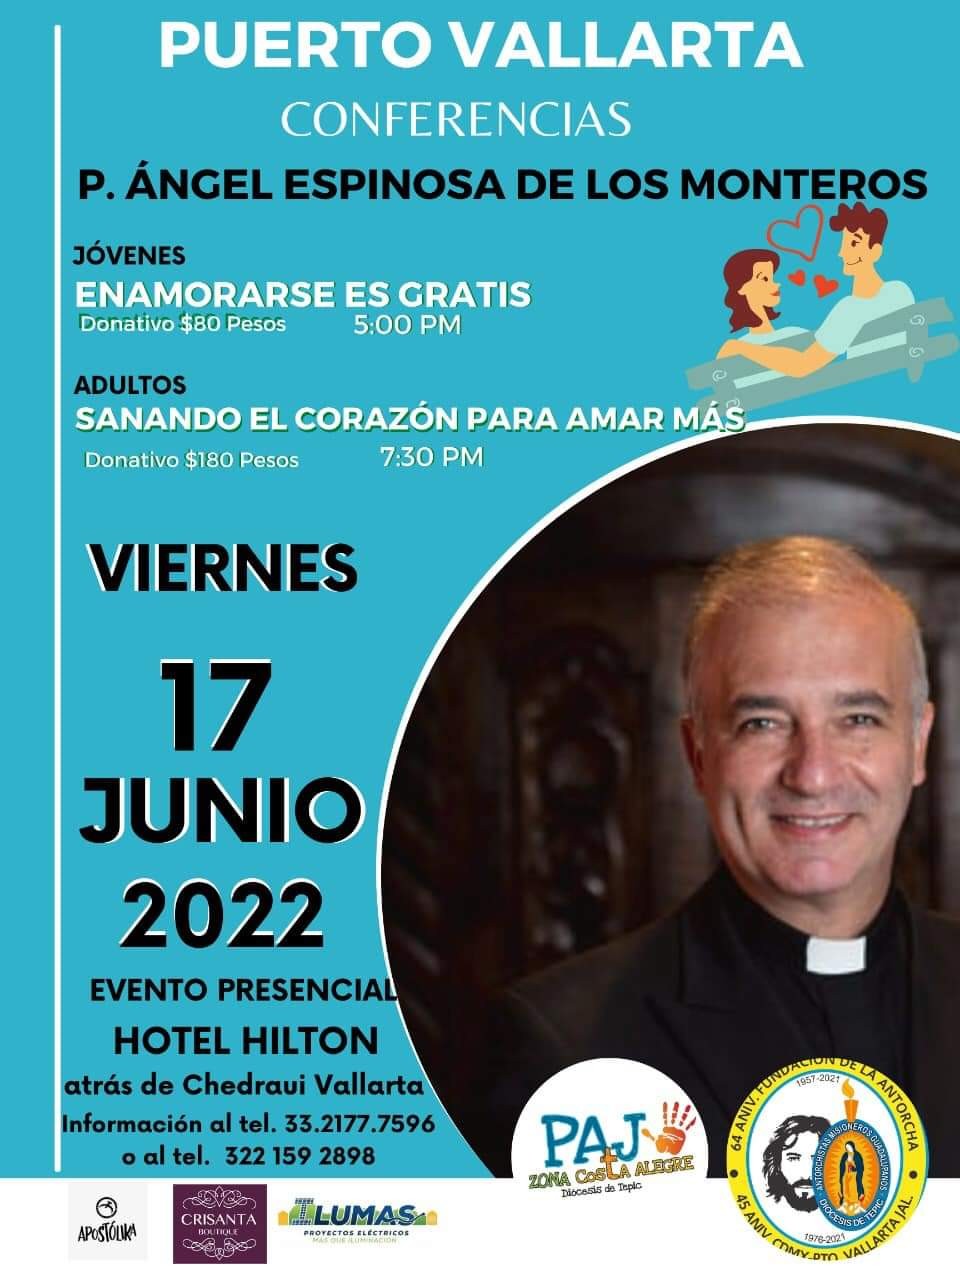 El padre influencer Ángel Espinosa de los Monteros estará en Vallarta |  Reporte Diario Vallarta